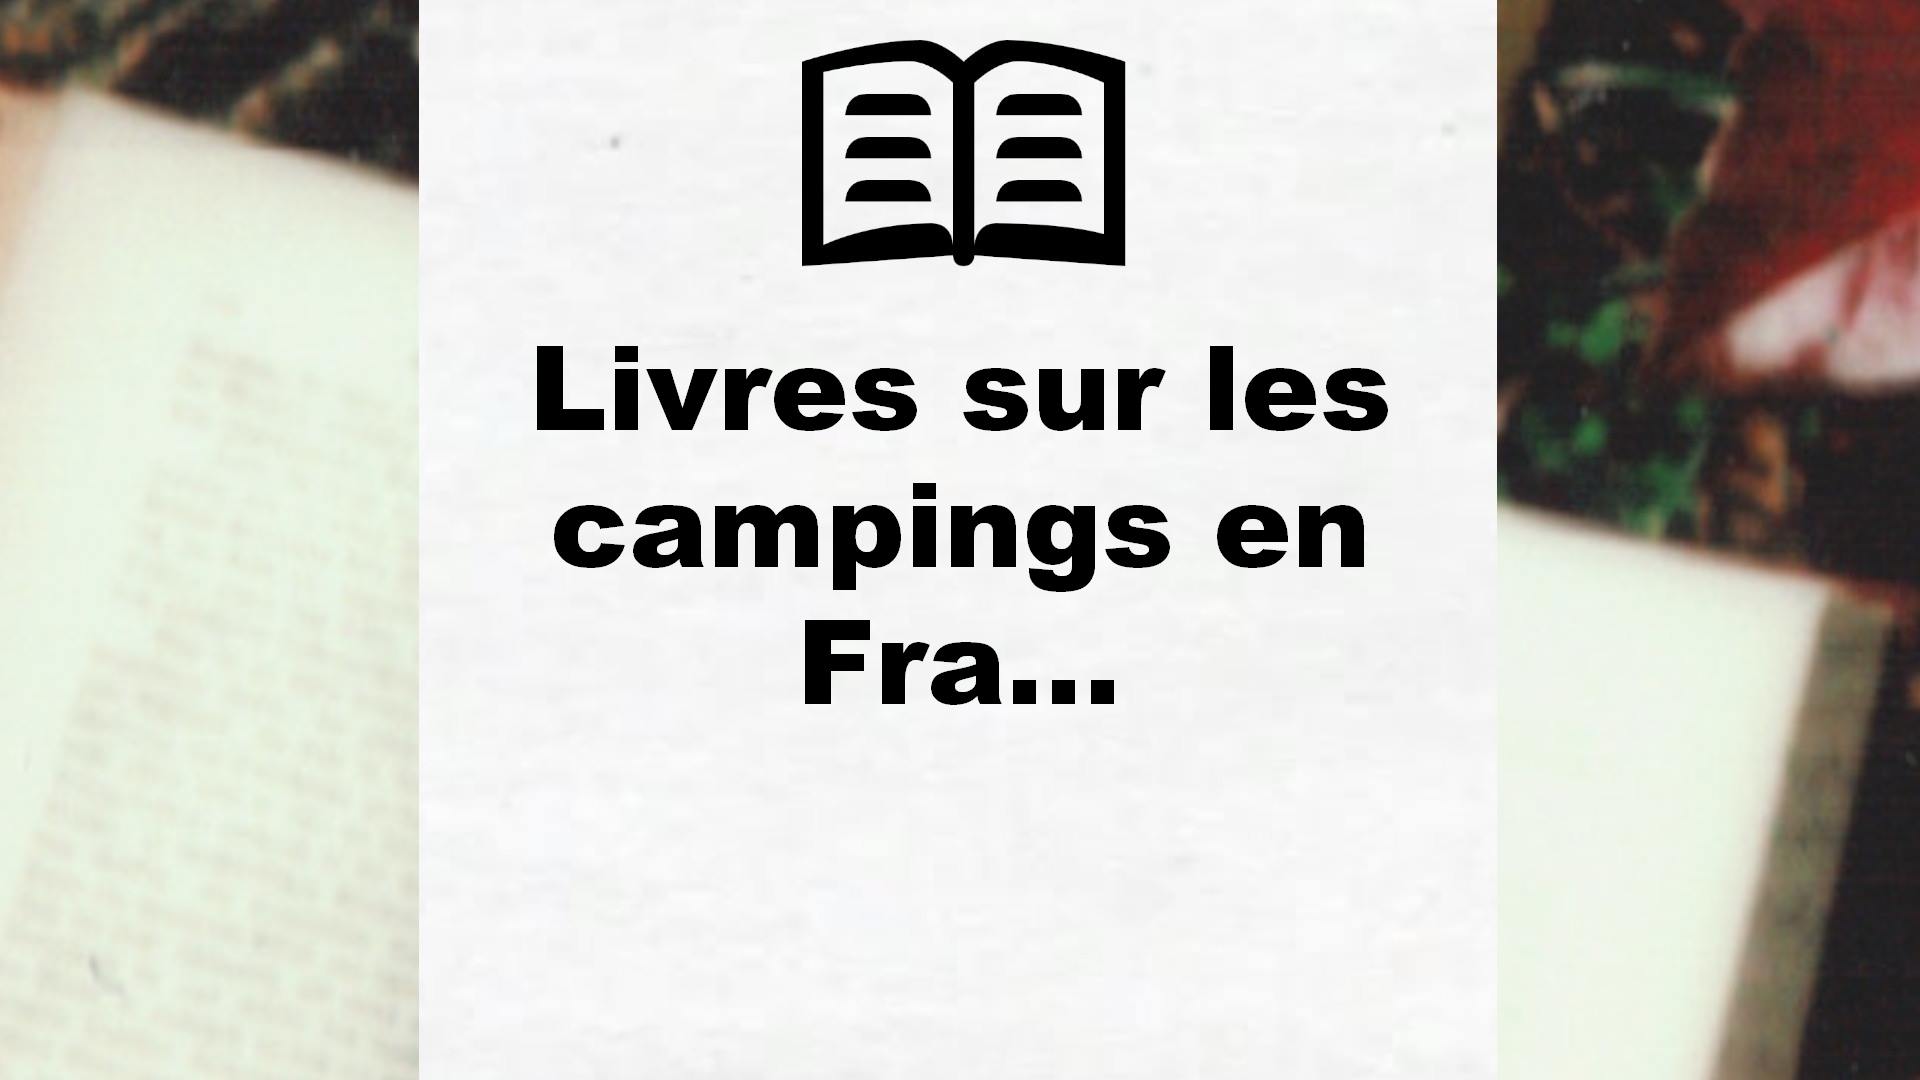 Livres sur les campings en France